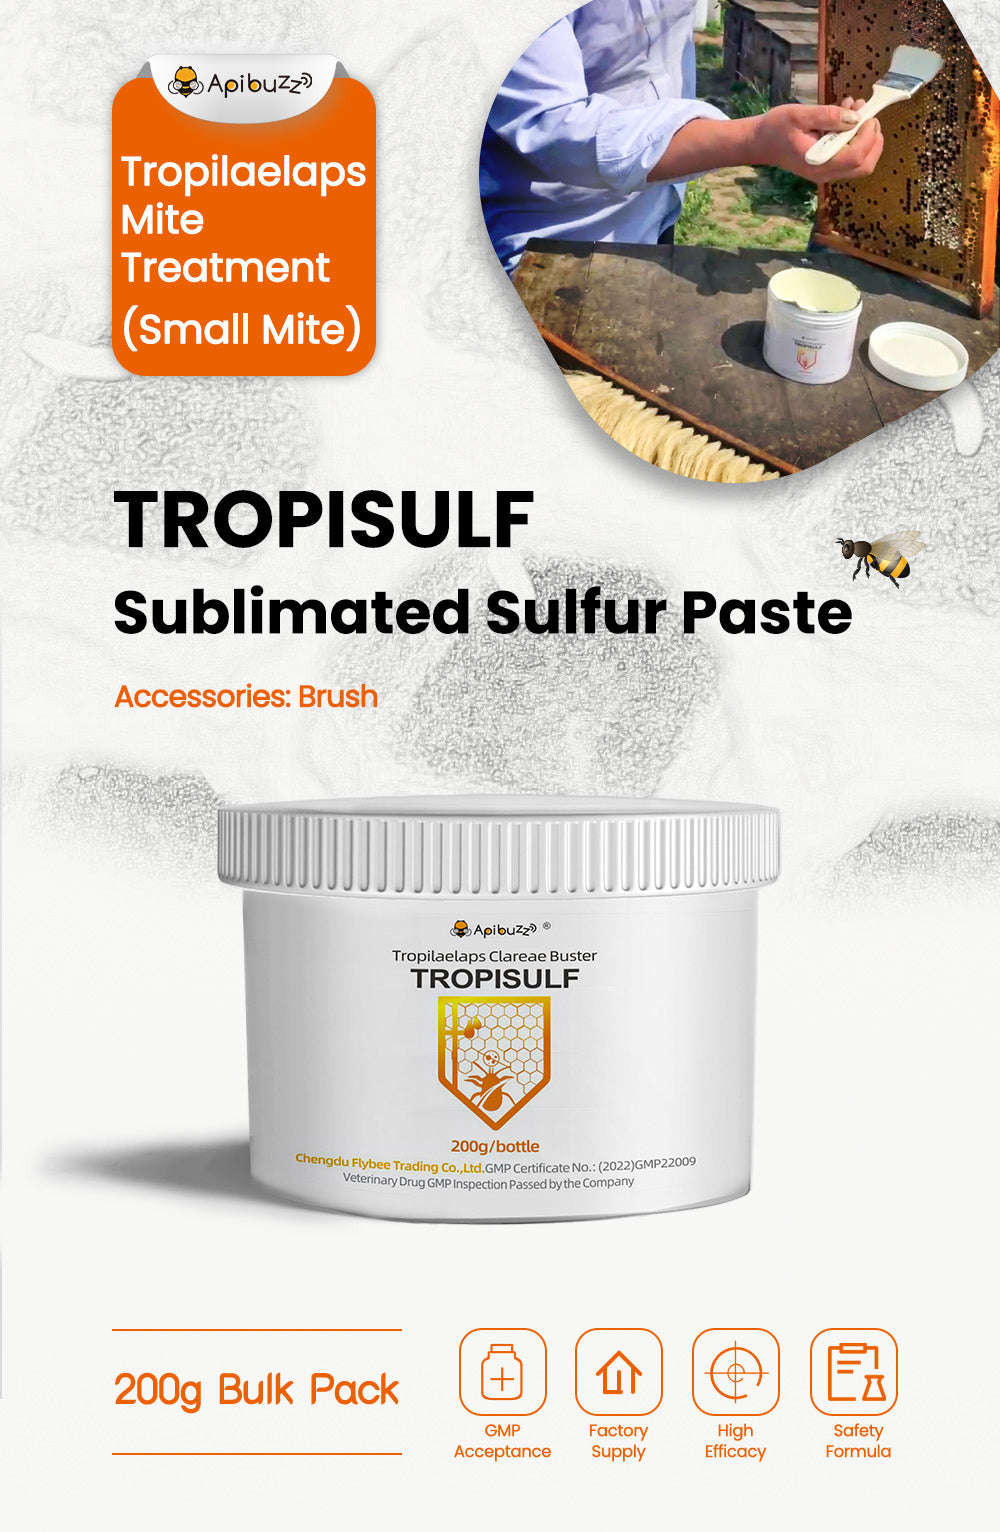 TROPISULF - Azufre Sublimado para el Tratamiento de los Ácaros Tropilaelaps